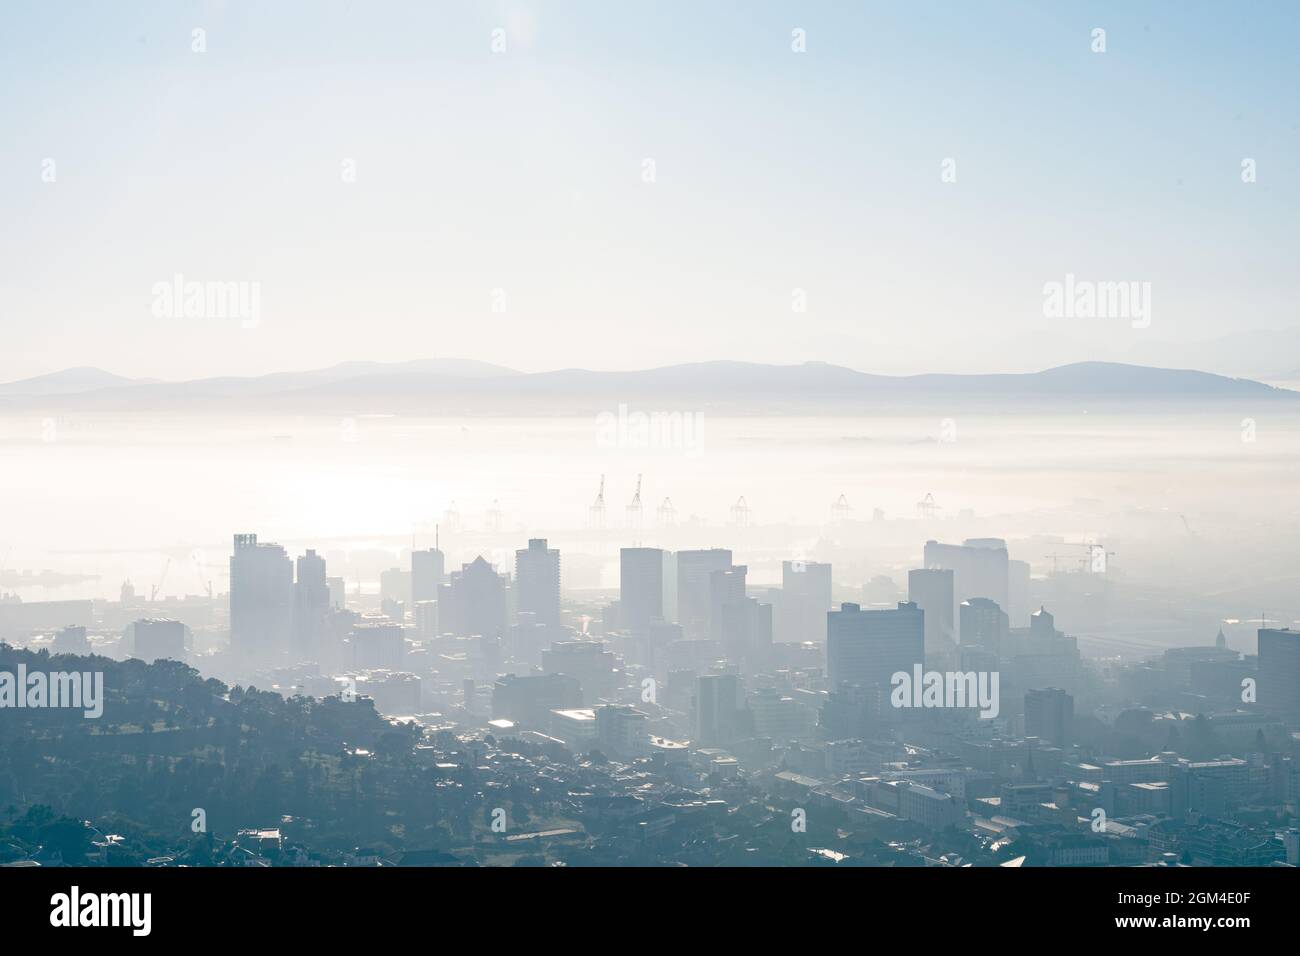 Vue générale sur le paysage urbain avec plusieurs bâtiments modernes et gratte-ciel le matin brumeux Banque D'Images